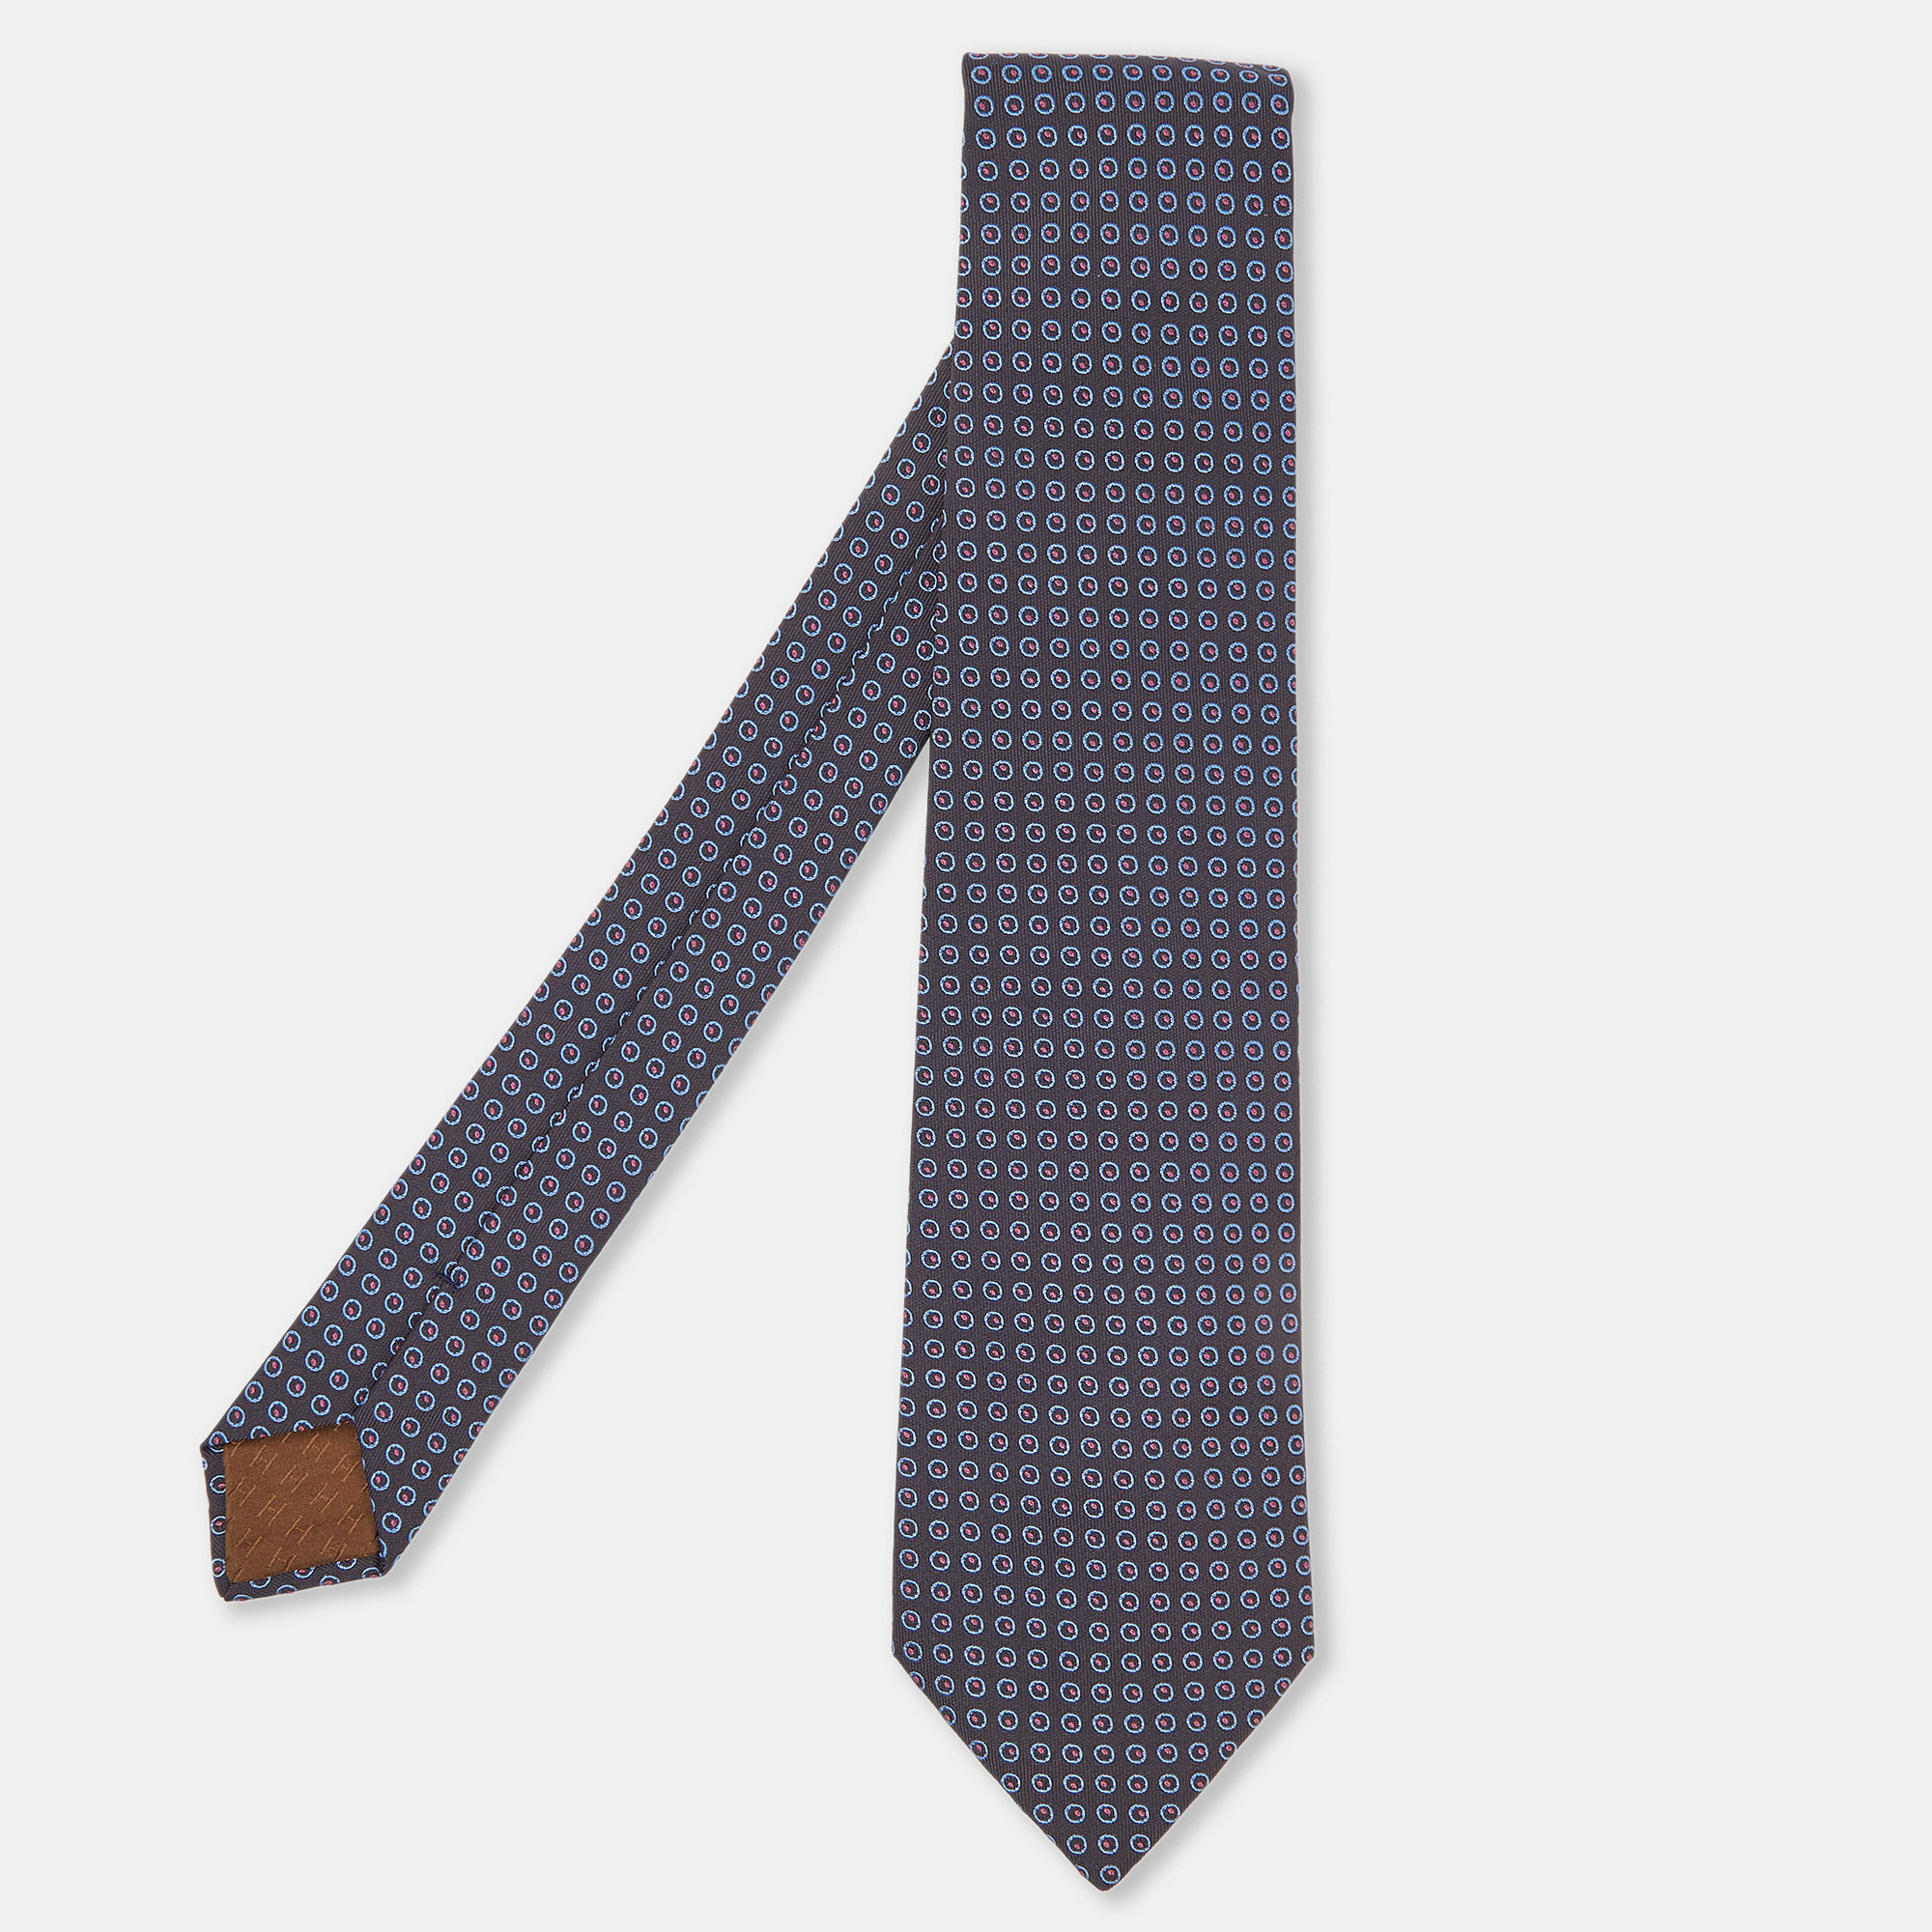 Hermes brown/blue circle pattern silk tie